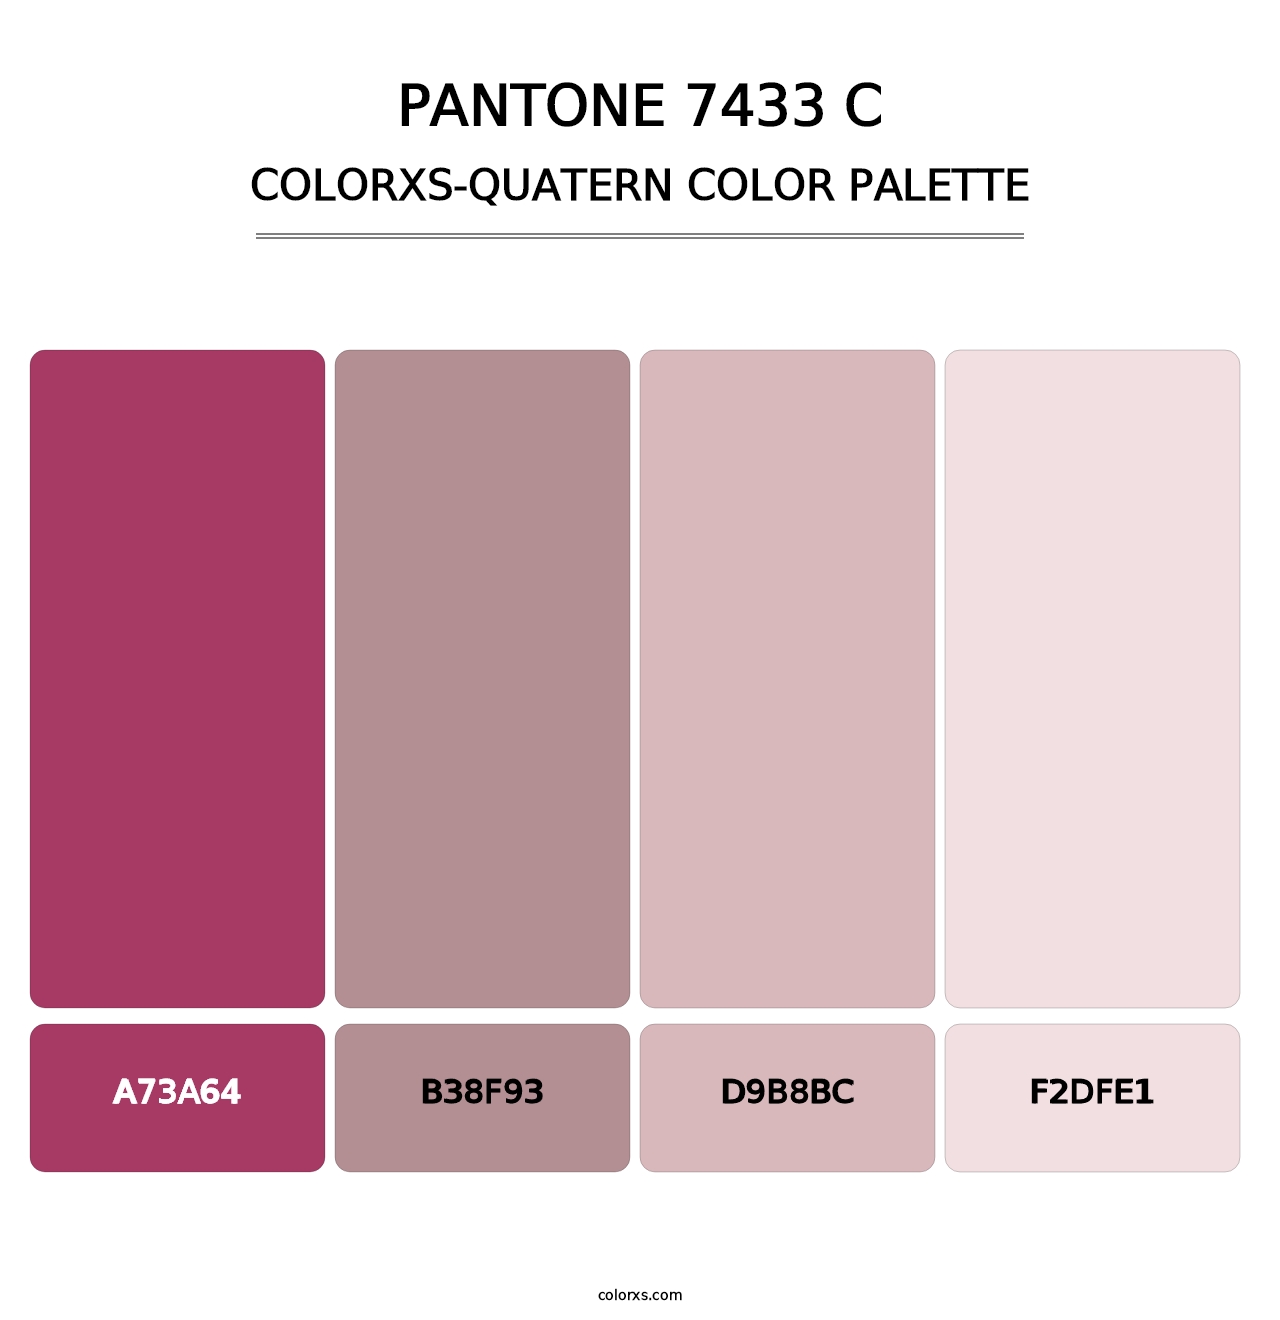 PANTONE 7433 C - Colorxs Quatern Palette